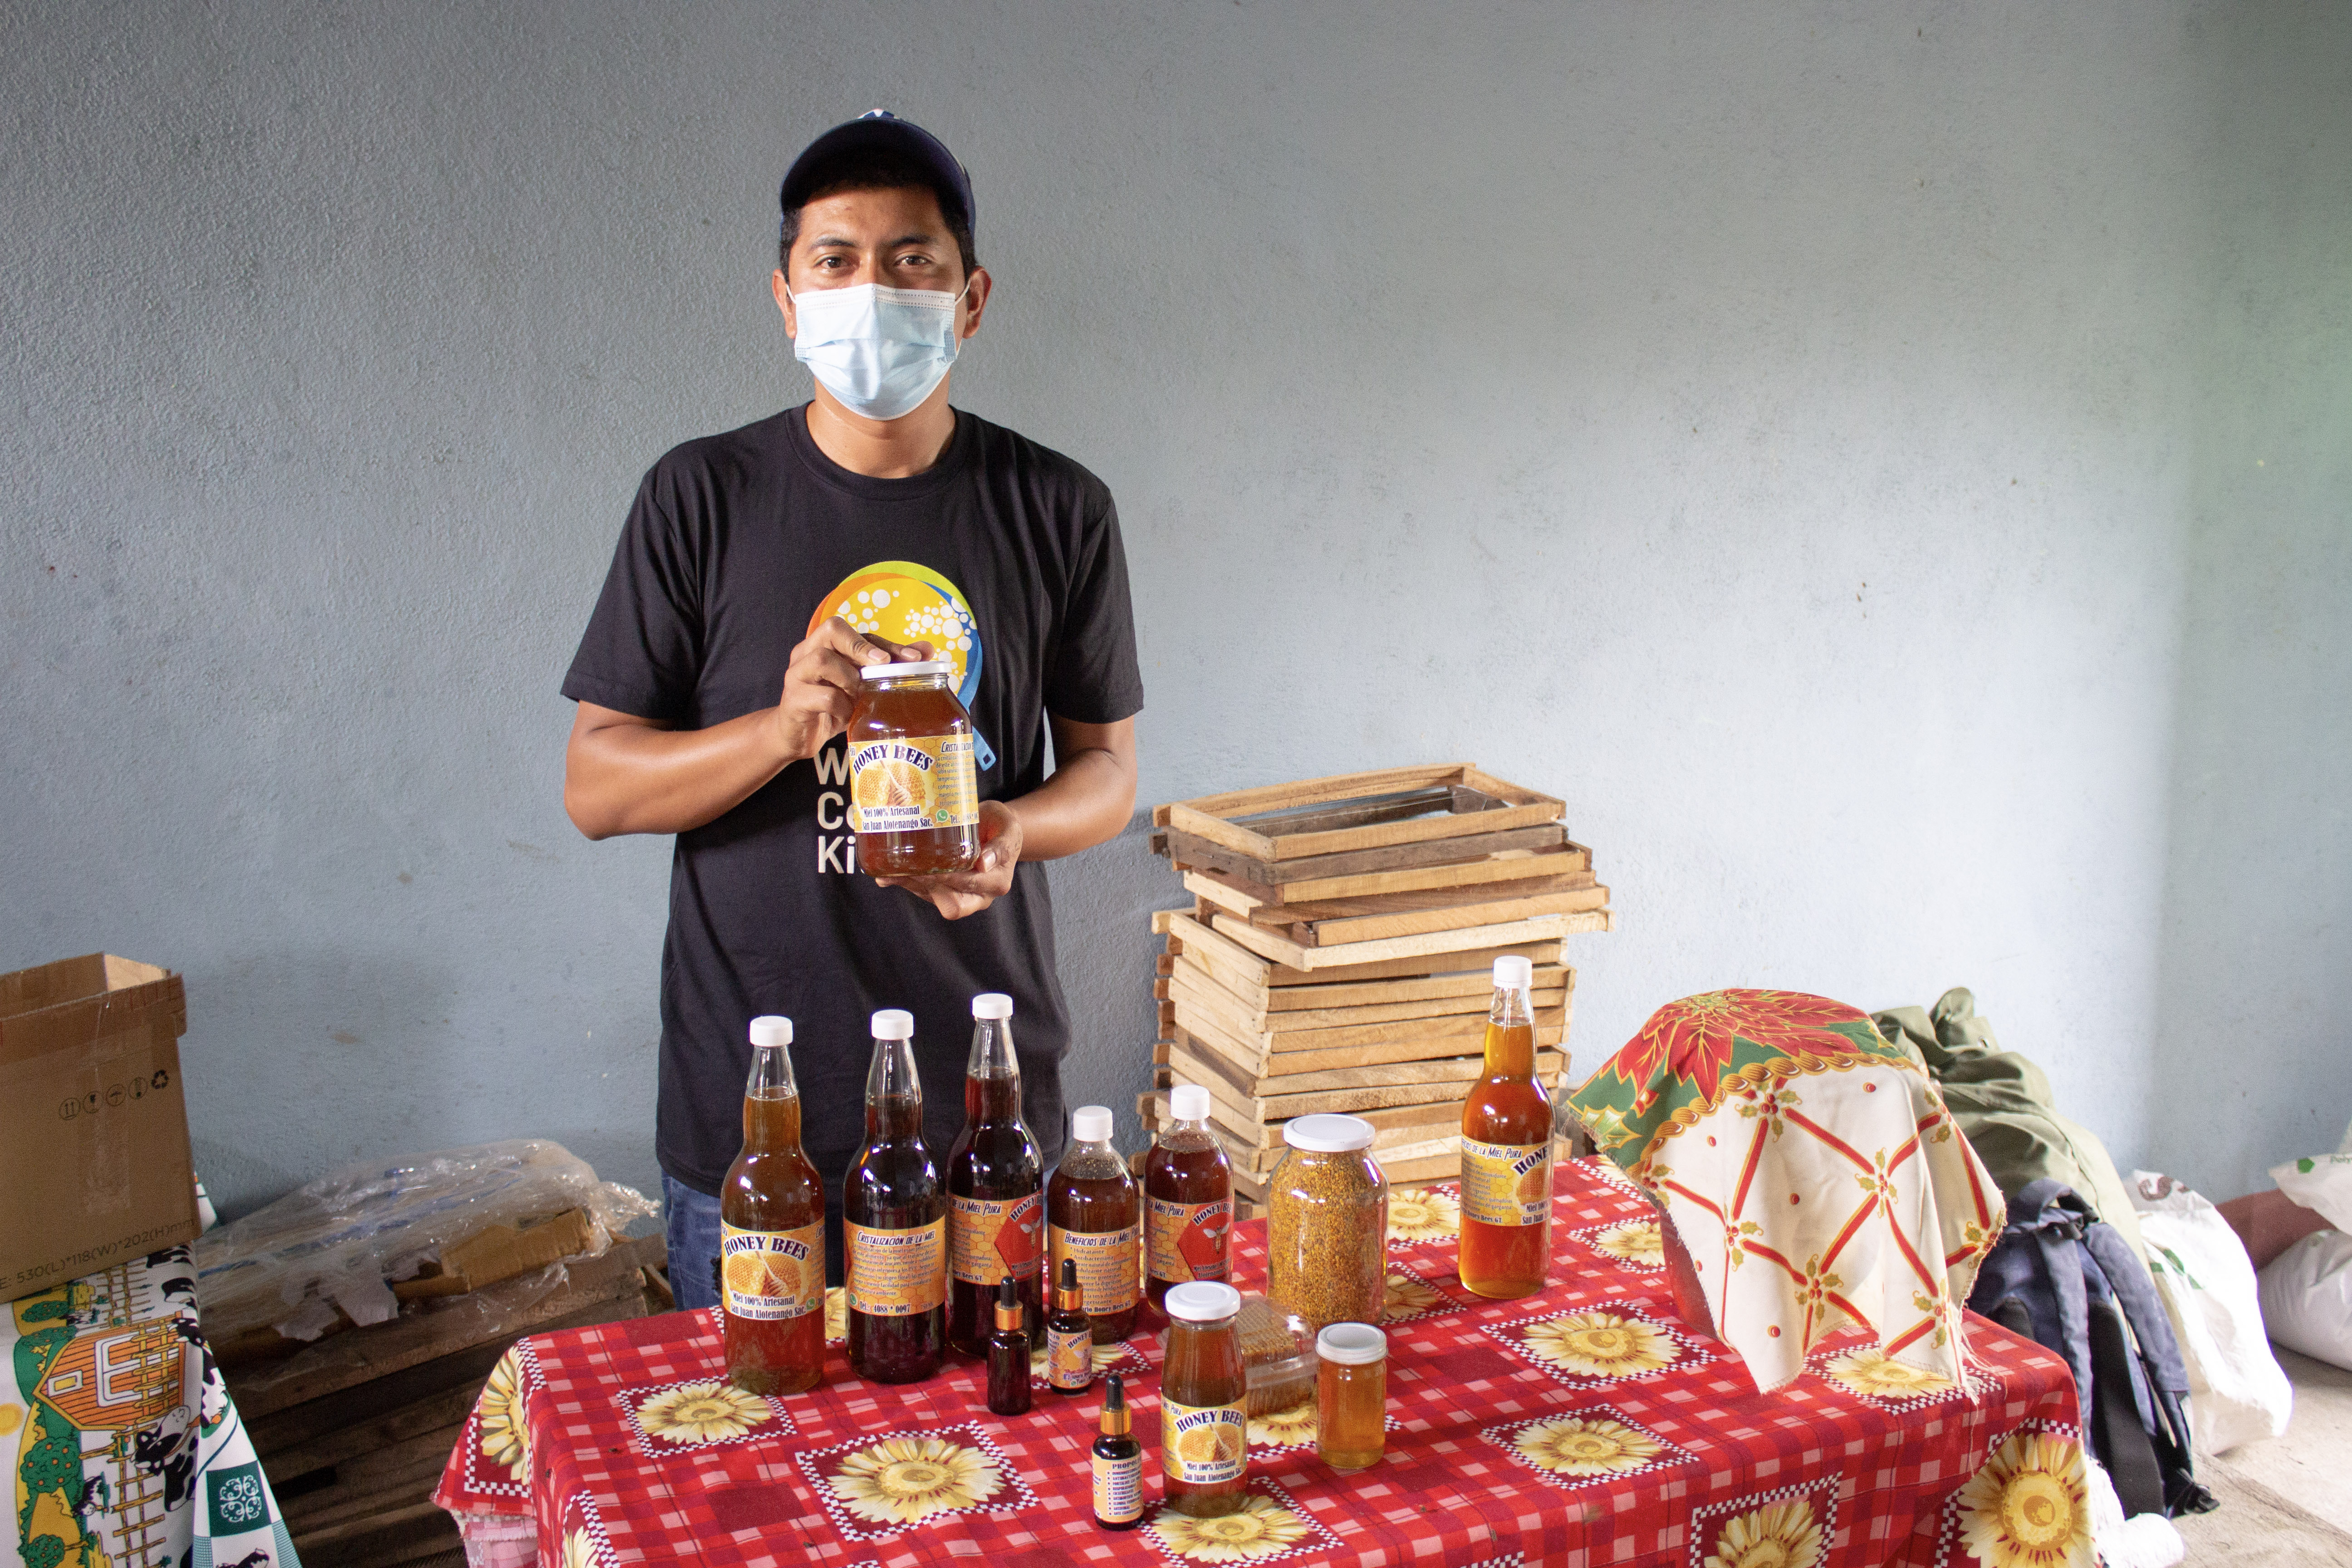 Pequeños productores guatemaltecos han mejorado su productividad y comercialización a través de programas de capacitación y apoyo crediticio. (Foto Prensa Libre: Cortesía WCK)